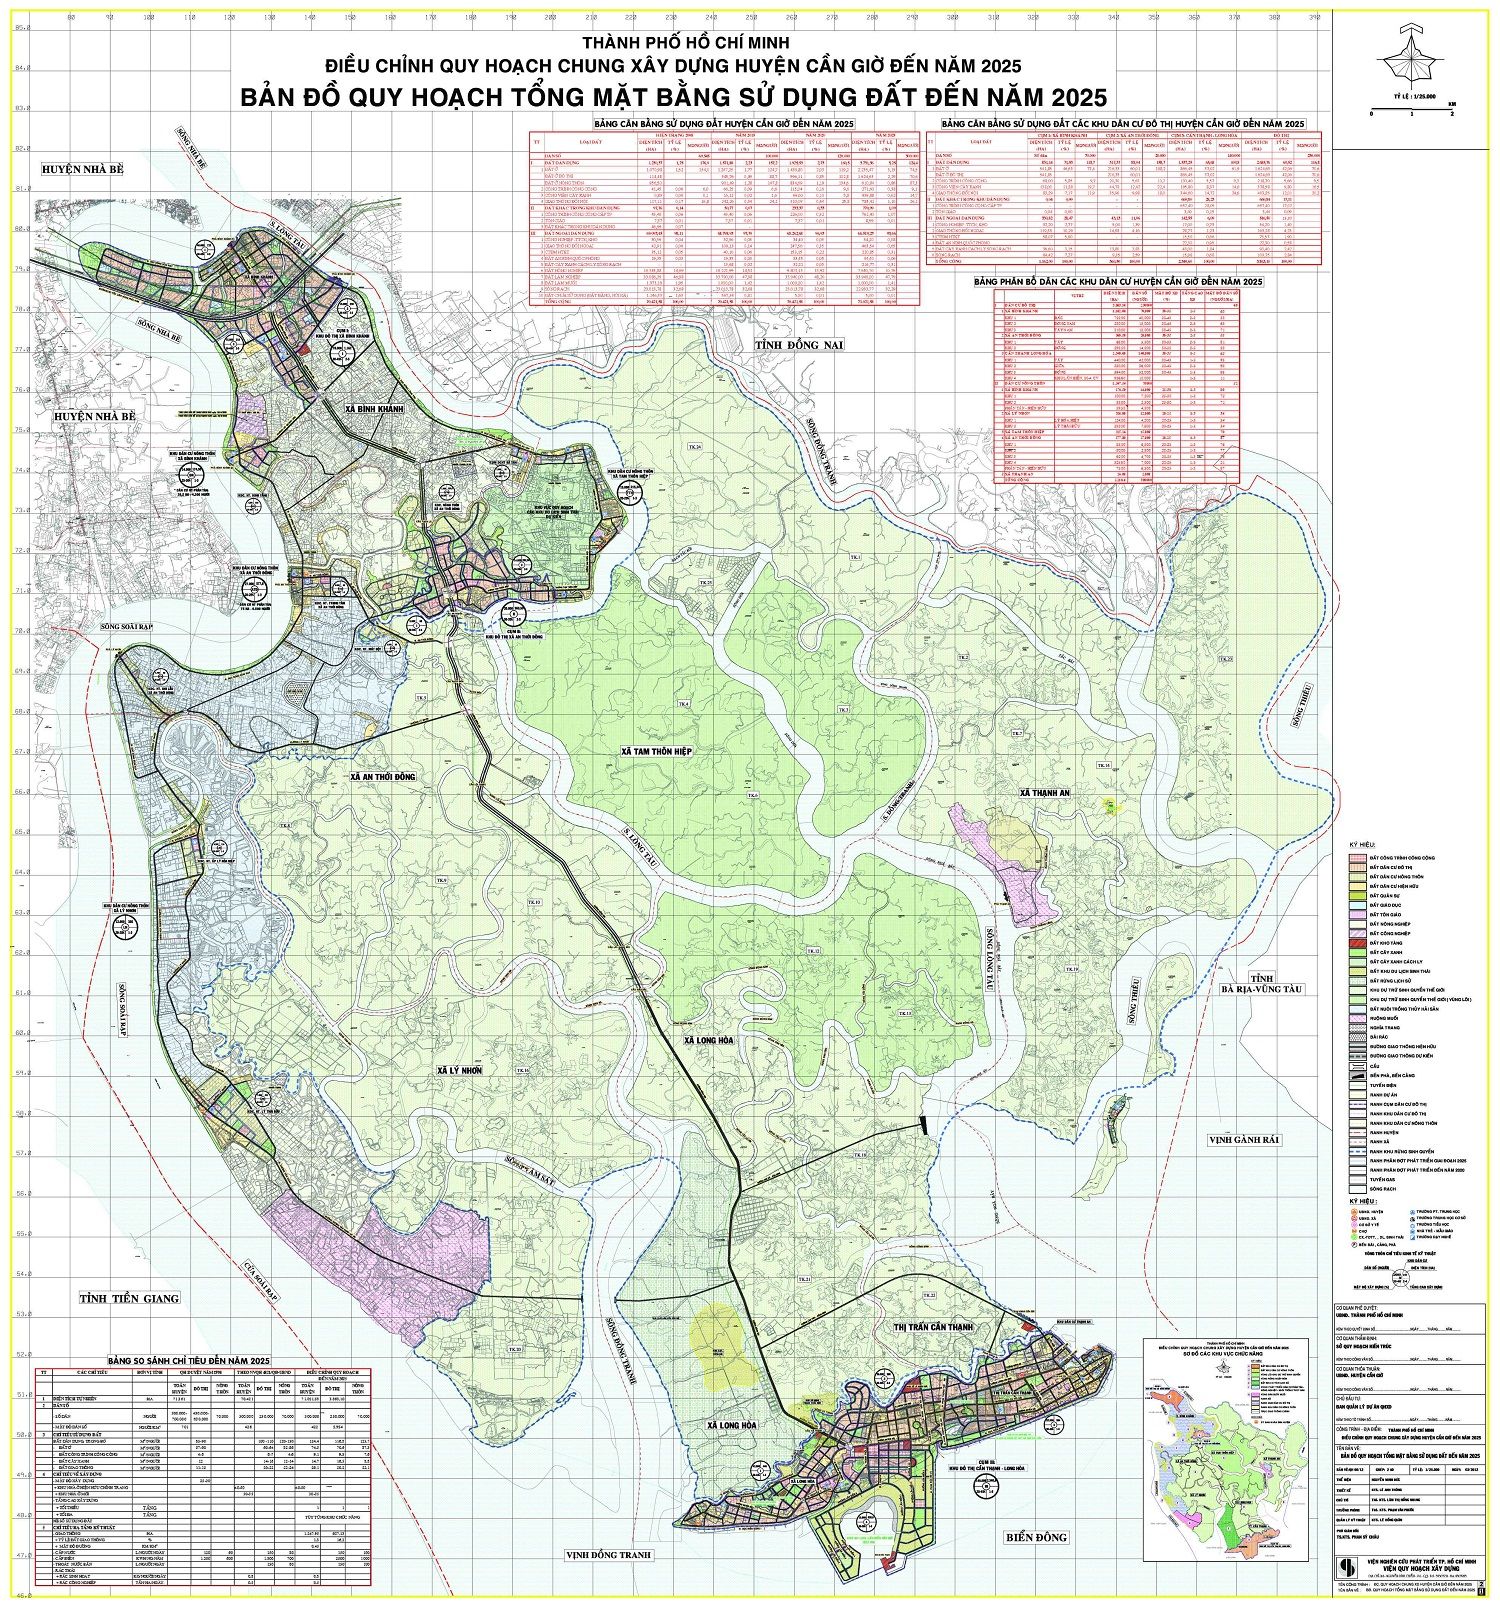 Xem bản đồ quy hoạch huyện Cần Giờ TP Hồ Chí Minh